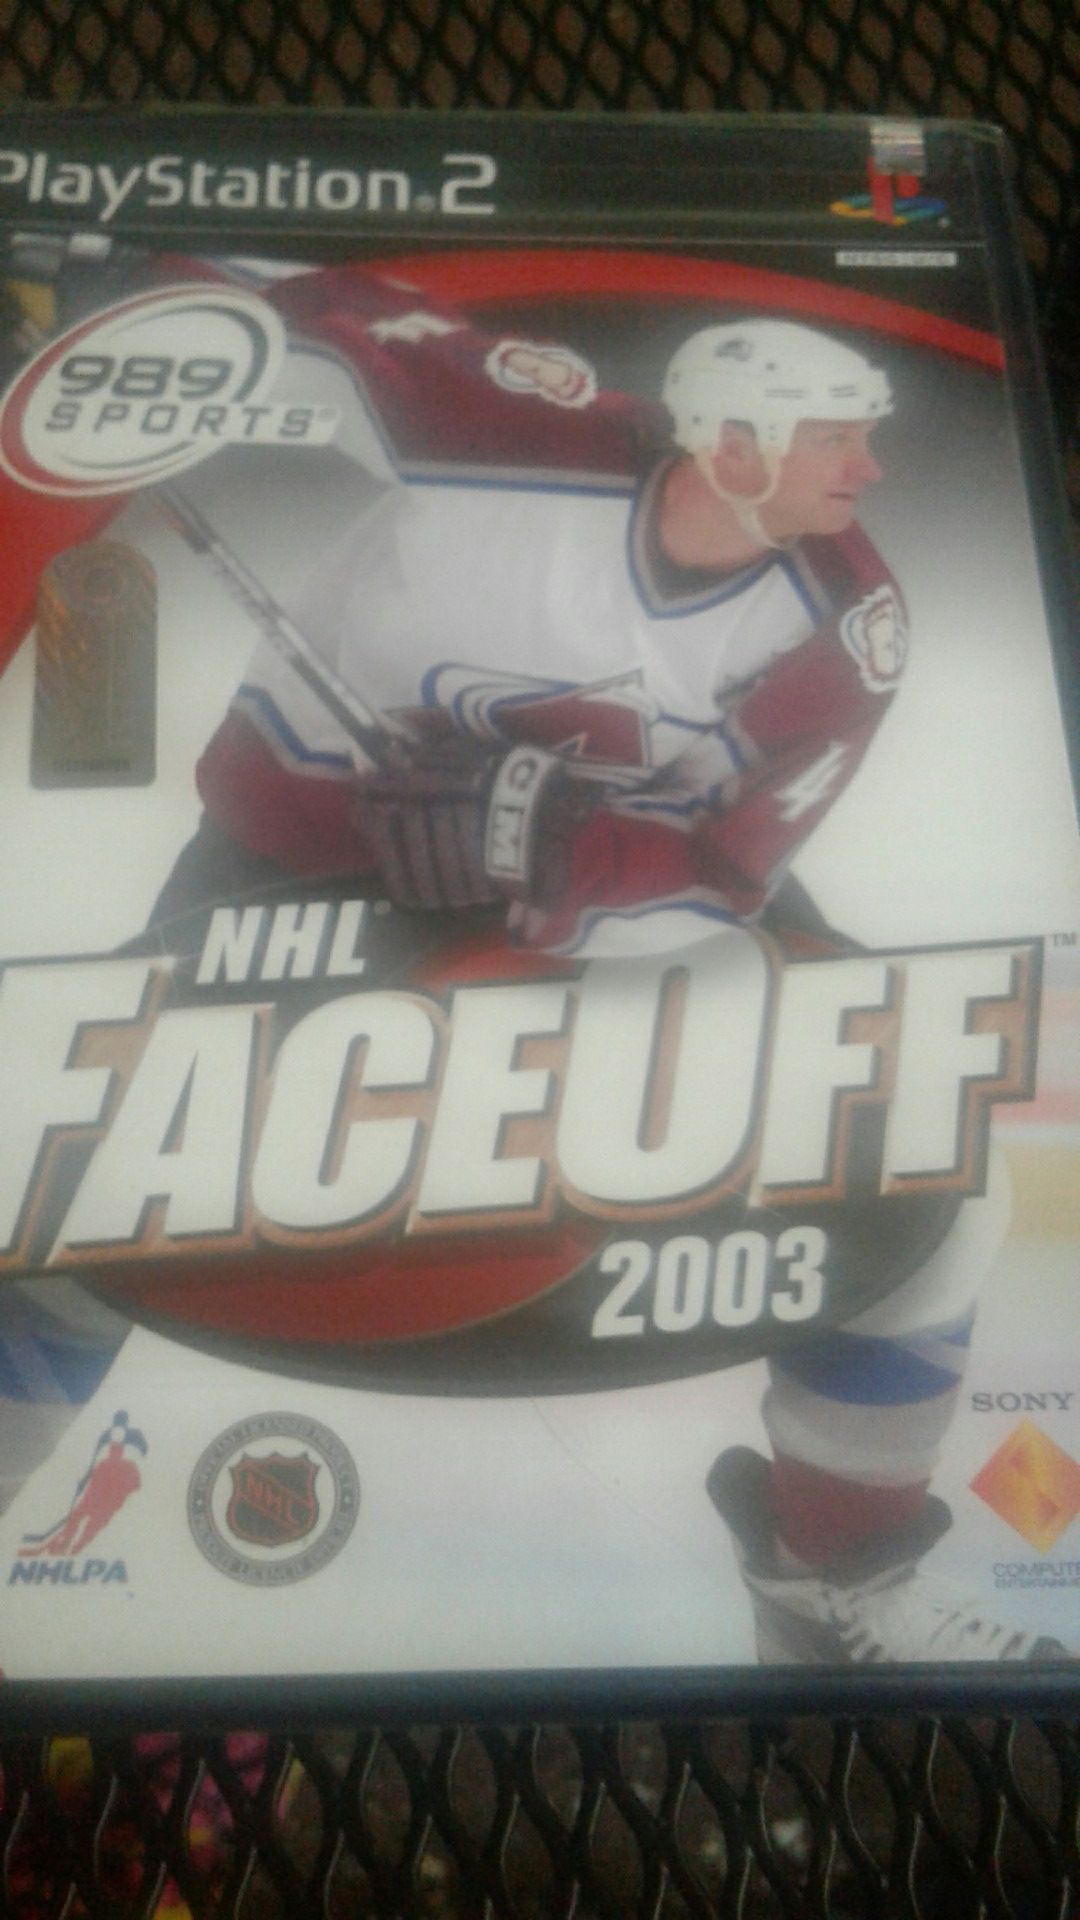 989 spots ps2 NHL Faceoff 2003